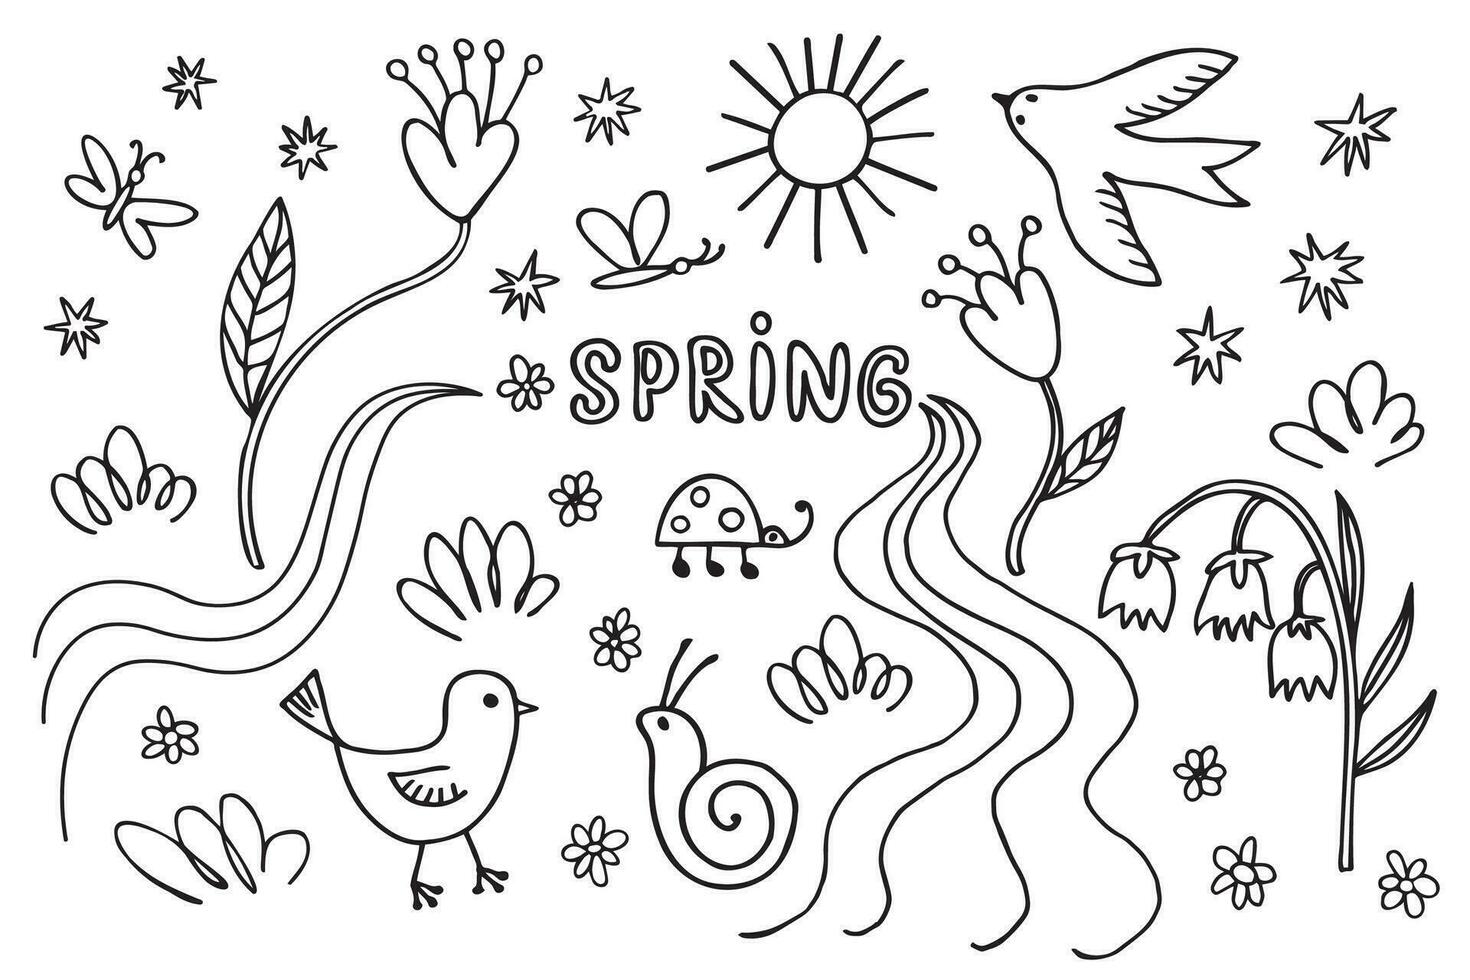 voorjaar inkt schetsen hand- getrokken tekening met stroom, vogel, bloeiend planten, bloemen, lieveheersbeestje, kip, zon, slak, vlinder, gras, lelie vallei, lente wild live. ontwerp achtergrond voor afdrukken, papier, kaart vector